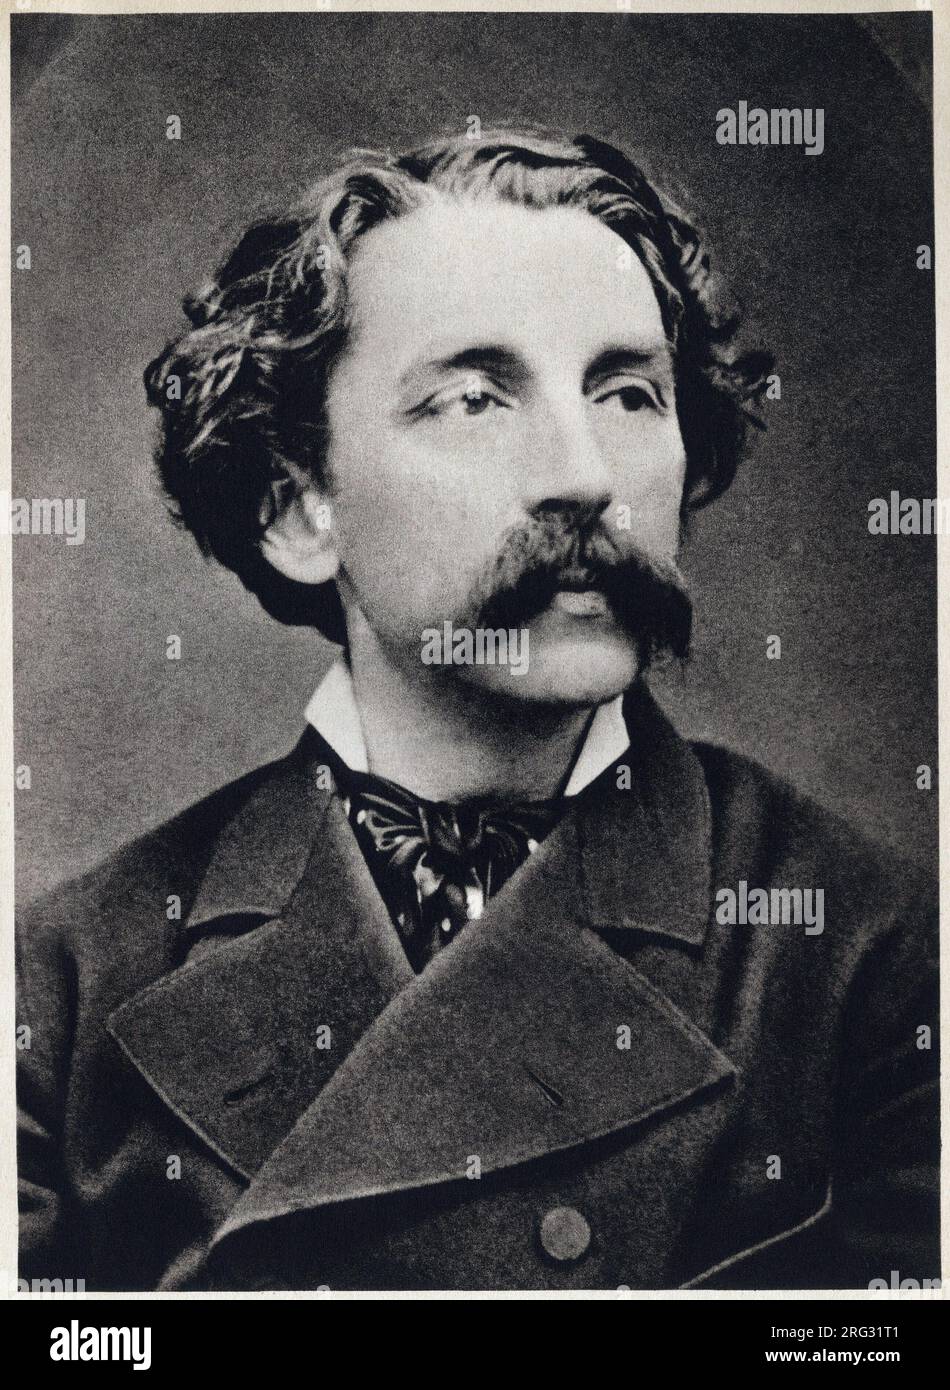 Portrait de Etienne Mallarme dit Stephane Mallarme (1842-1898) vers 1873, poete francais. Photographie, 1862, Paris. Stock Photo